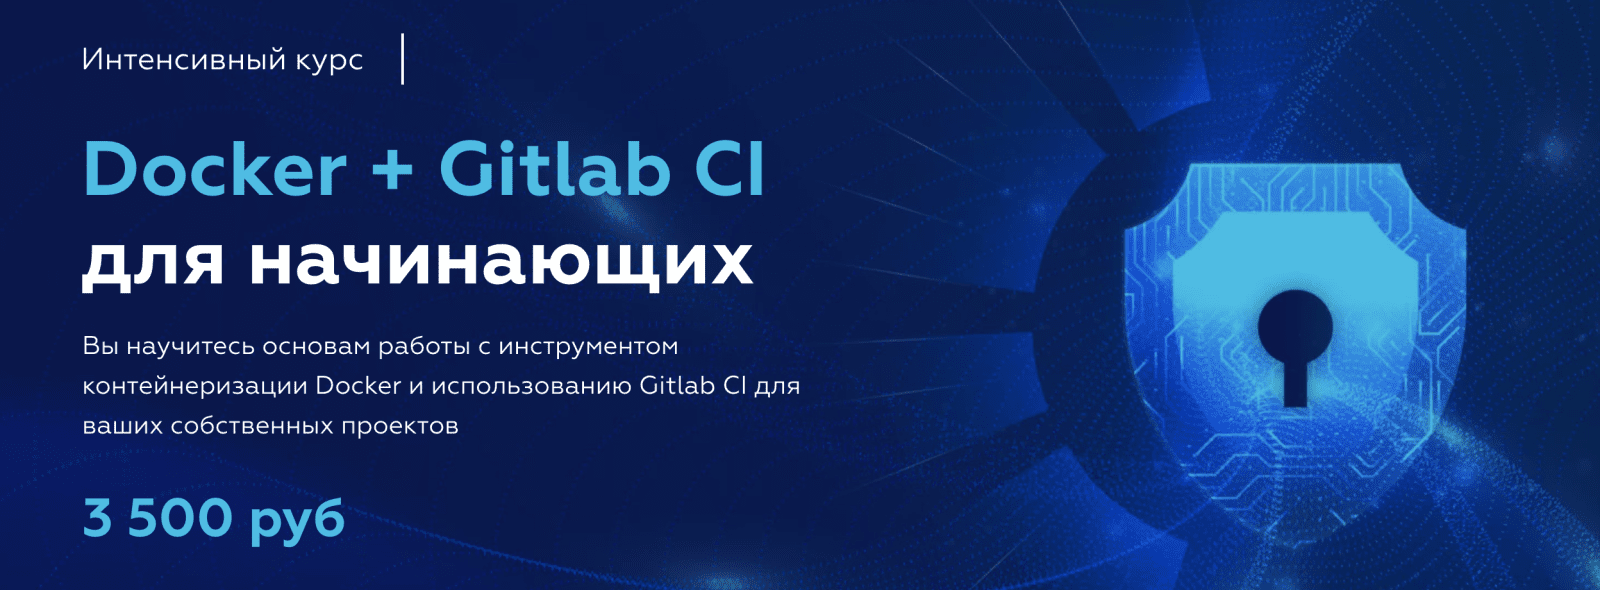 Изображение [МФТИ] Олег Ивченко - Docker + Gitlab CI для начинающих (2021) в посте 254598